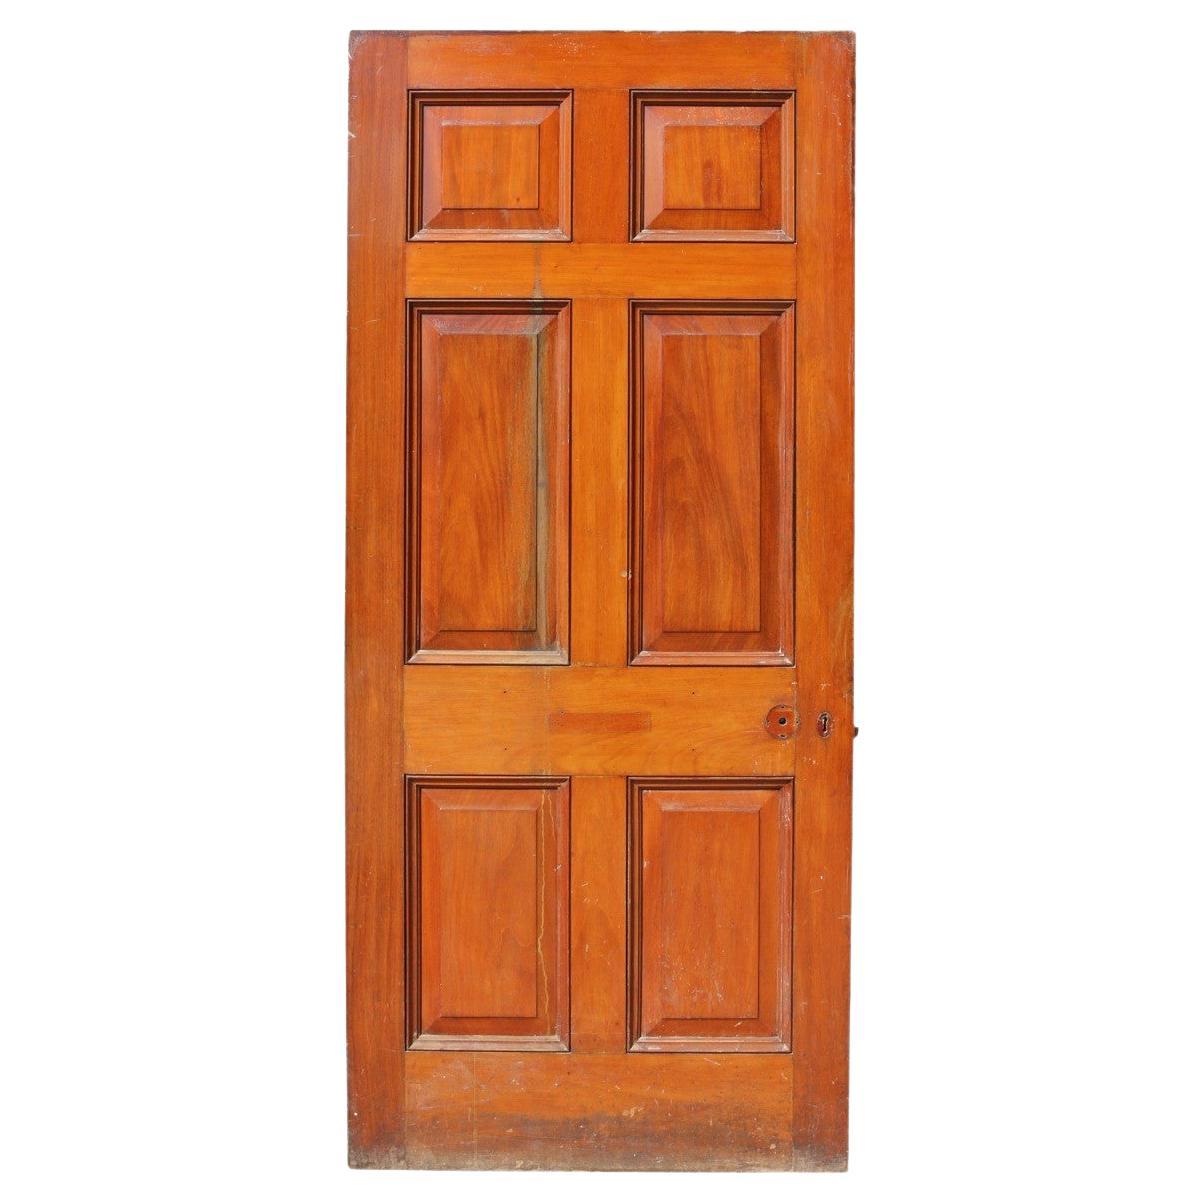 19th Century Mahogany Six Panel Door